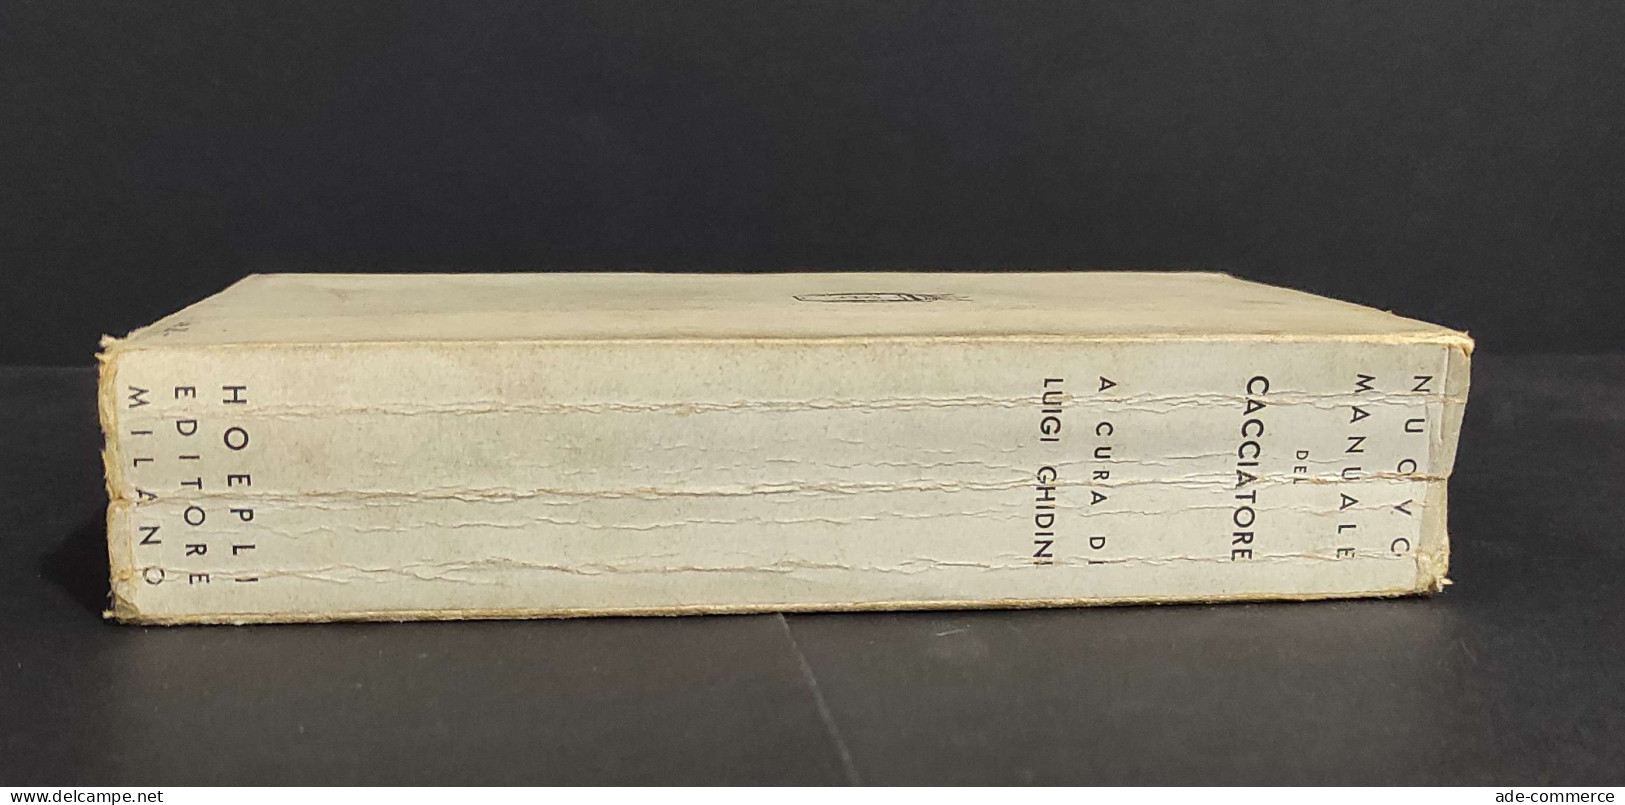 Nuovo Manuale Del Cacciatore - L. Ghidini - Ed. Hoepli - 1940                                                            - Fischen Und Jagen